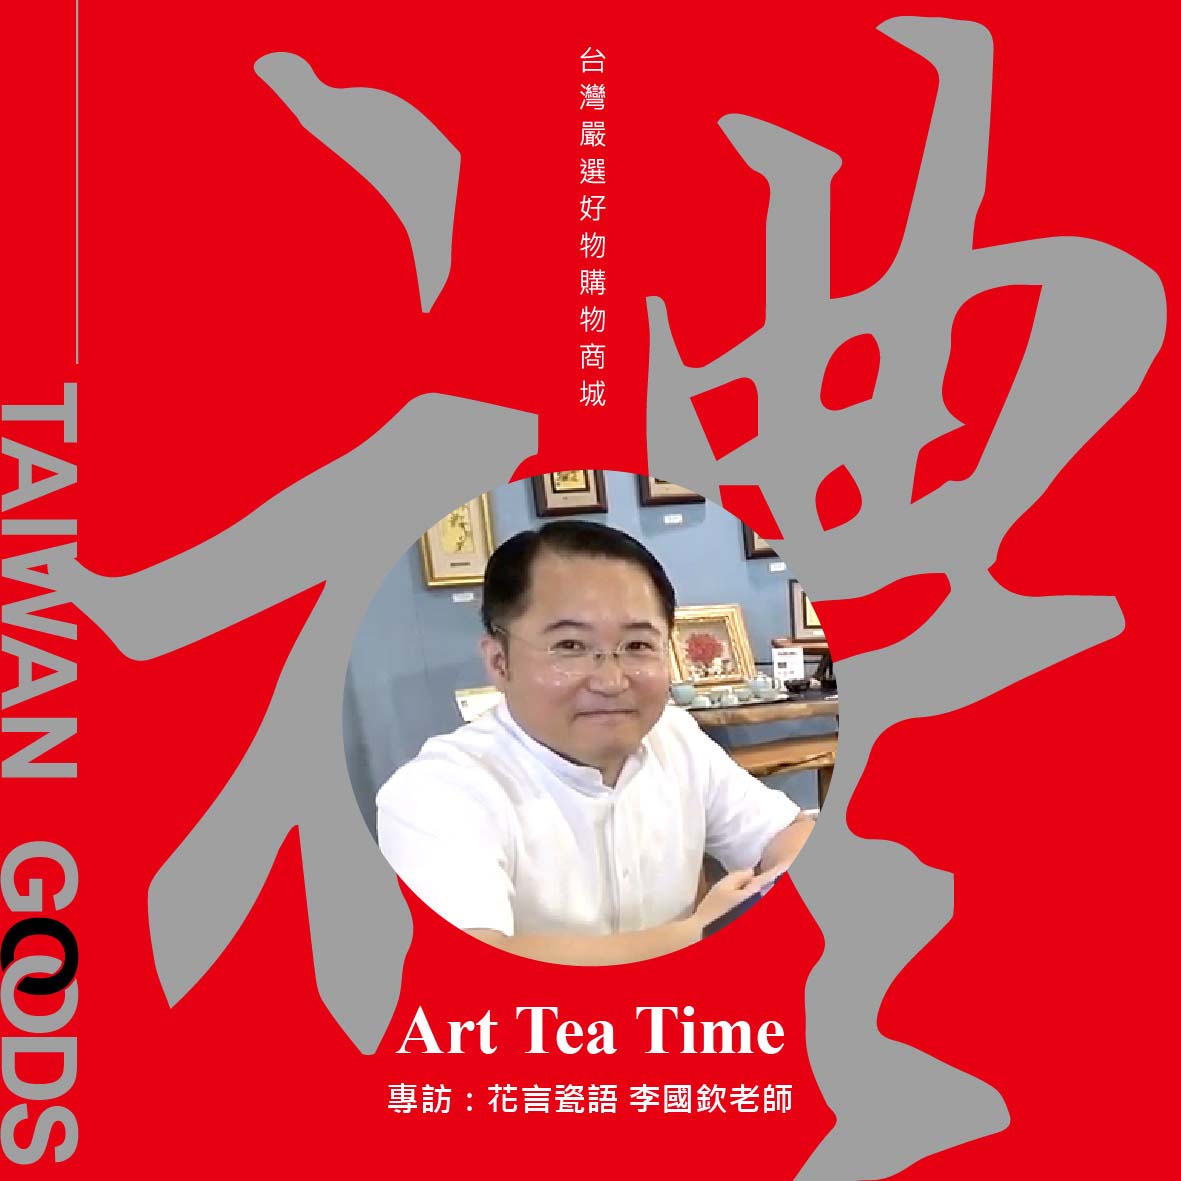 「Art Tea Time單元」台灣禮品館－花言瓷語，訪談李國欽老師： 用陶藝玩雕塑，分享台灣動植物創作作品歷程